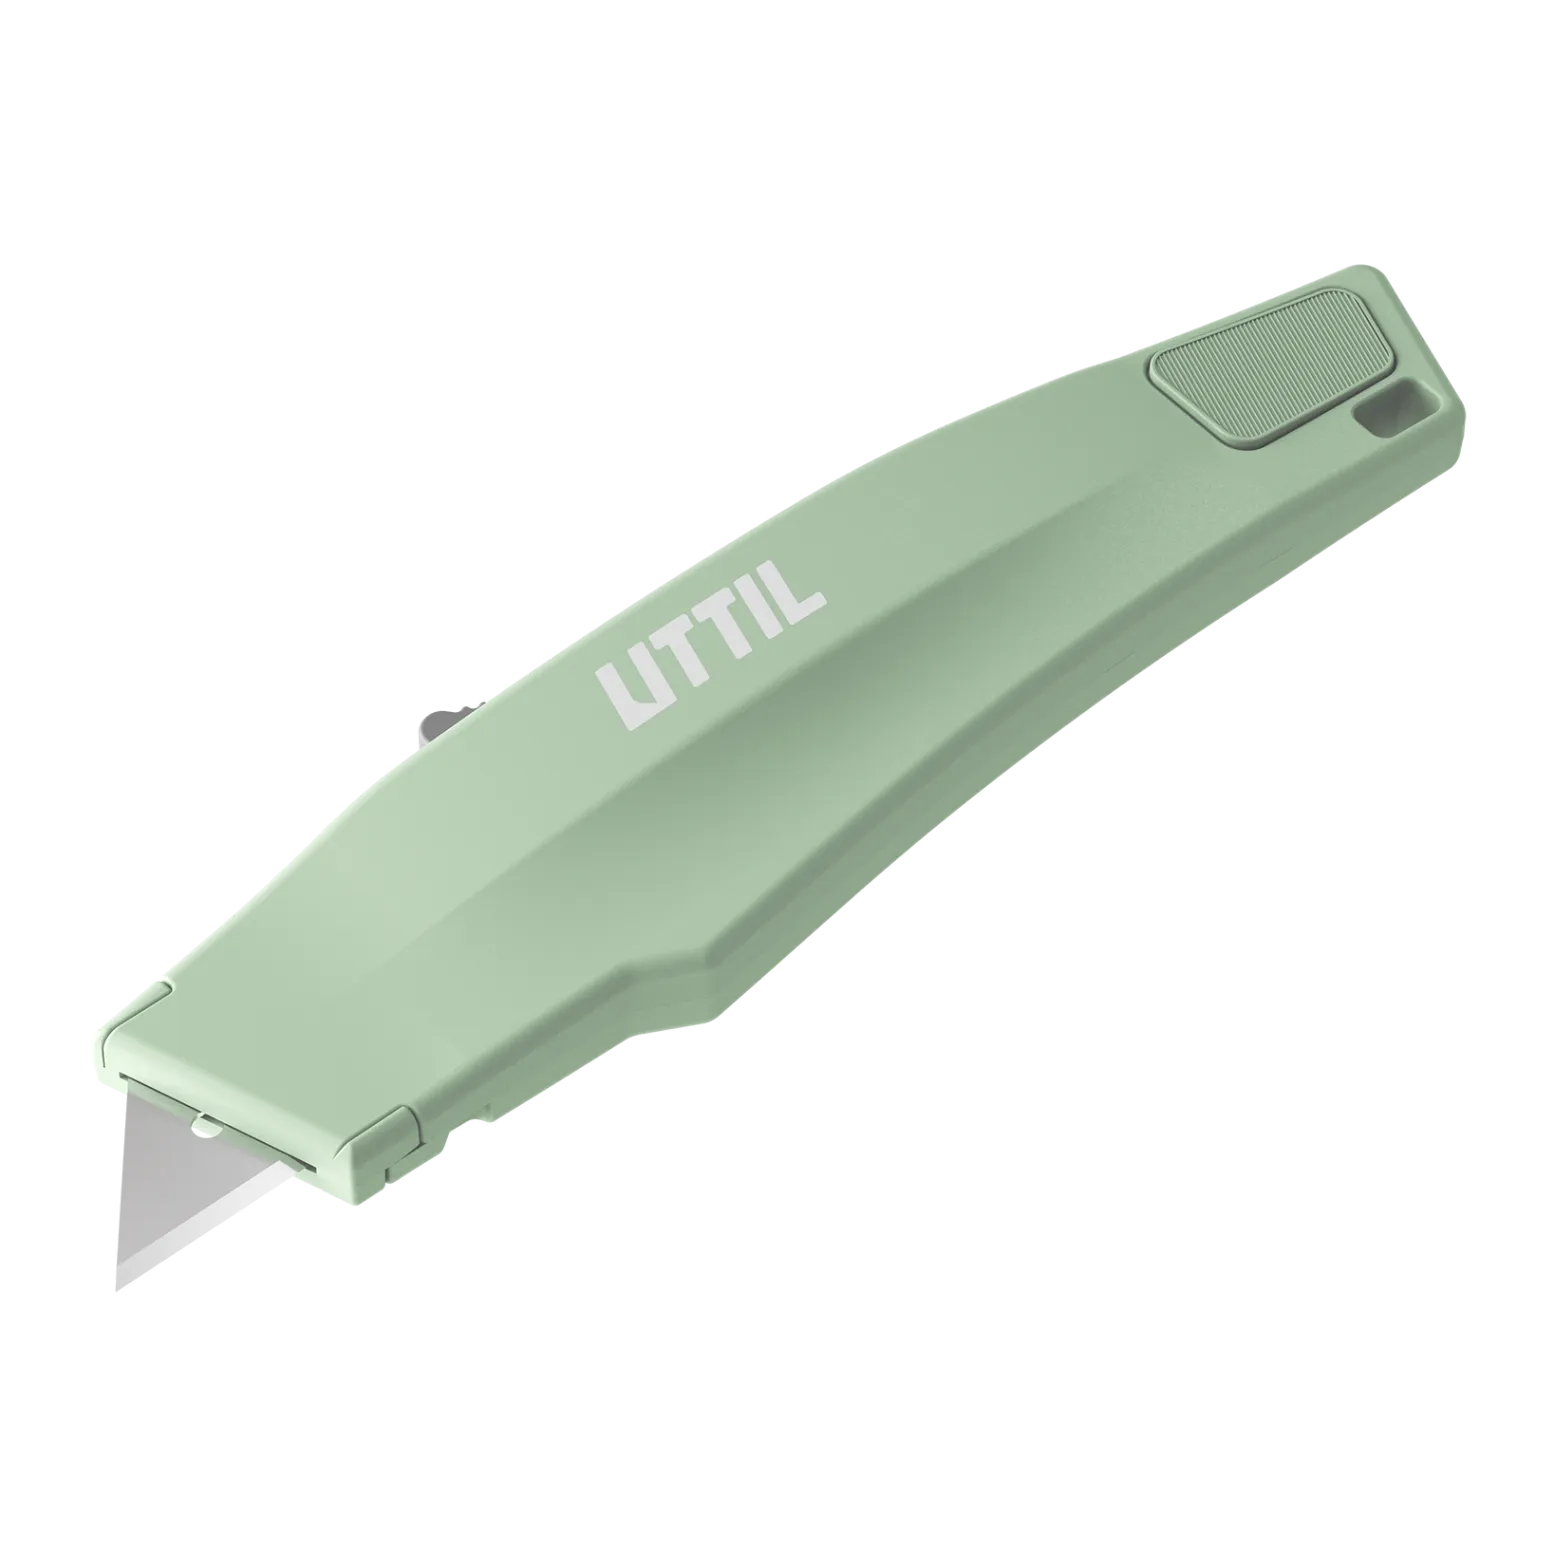 pruk-06-heavy-duty-knife-4